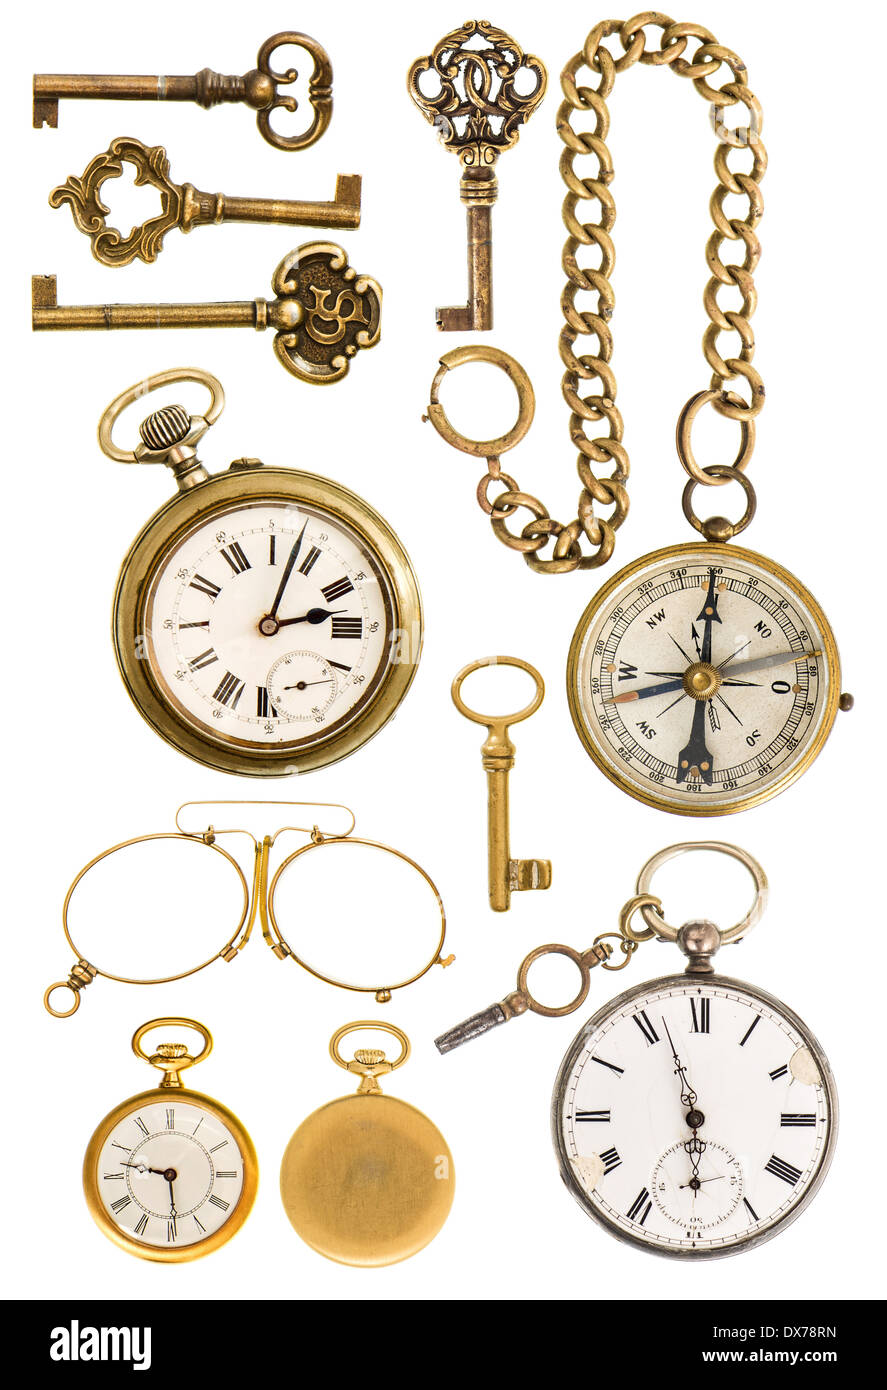 Collection de golden vintage accessoires. Mobilier clés, réveil, boussole, lunettes isolé sur fond blanc Banque D'Images